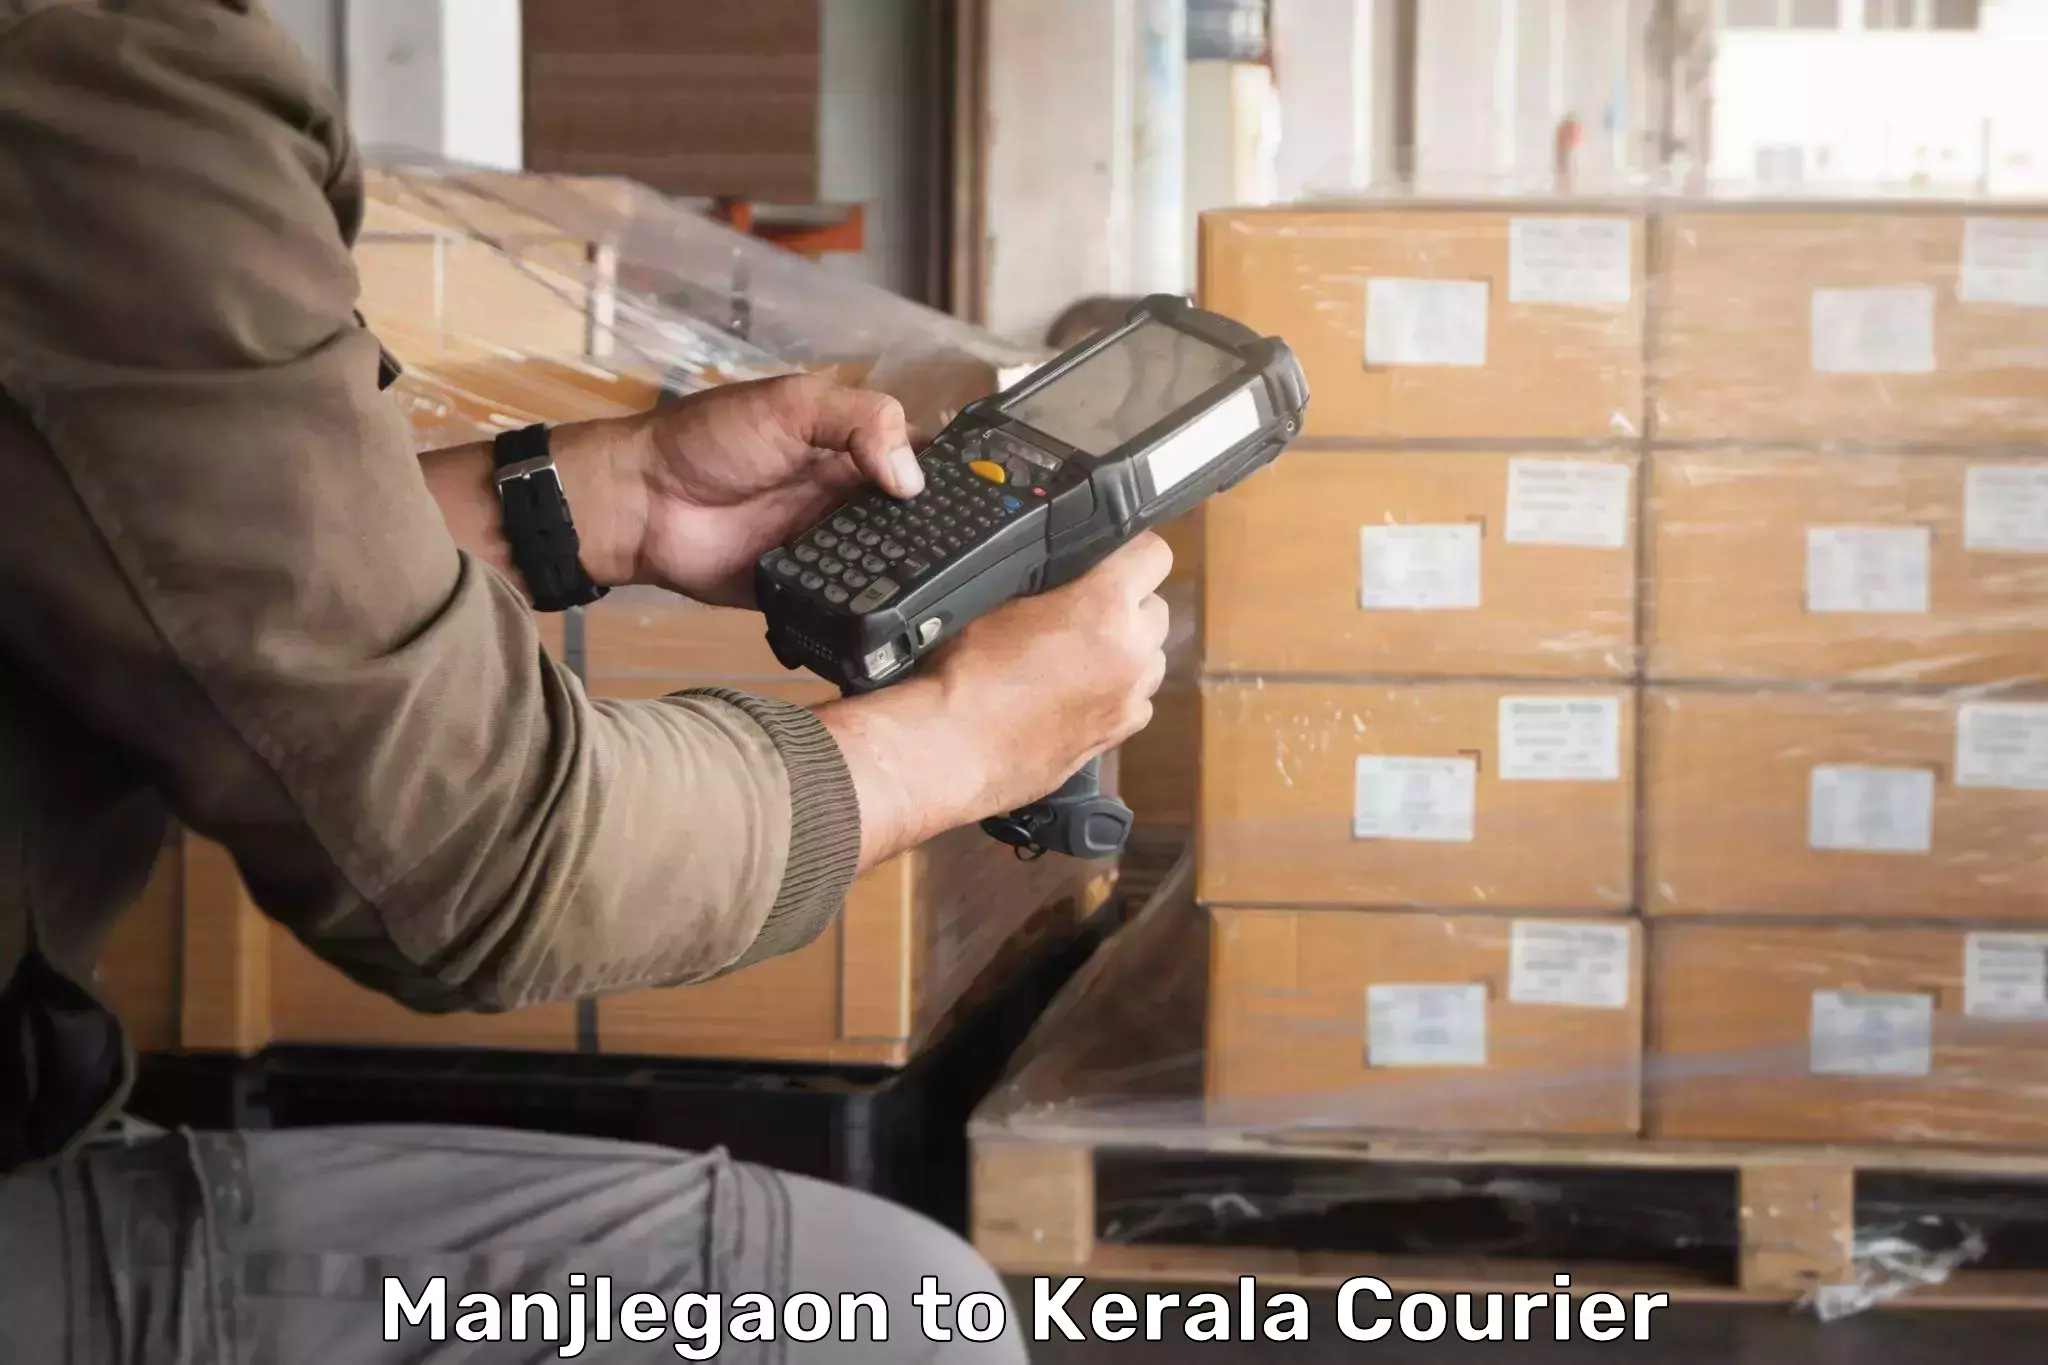 Personal parcel delivery Manjlegaon to Tirur